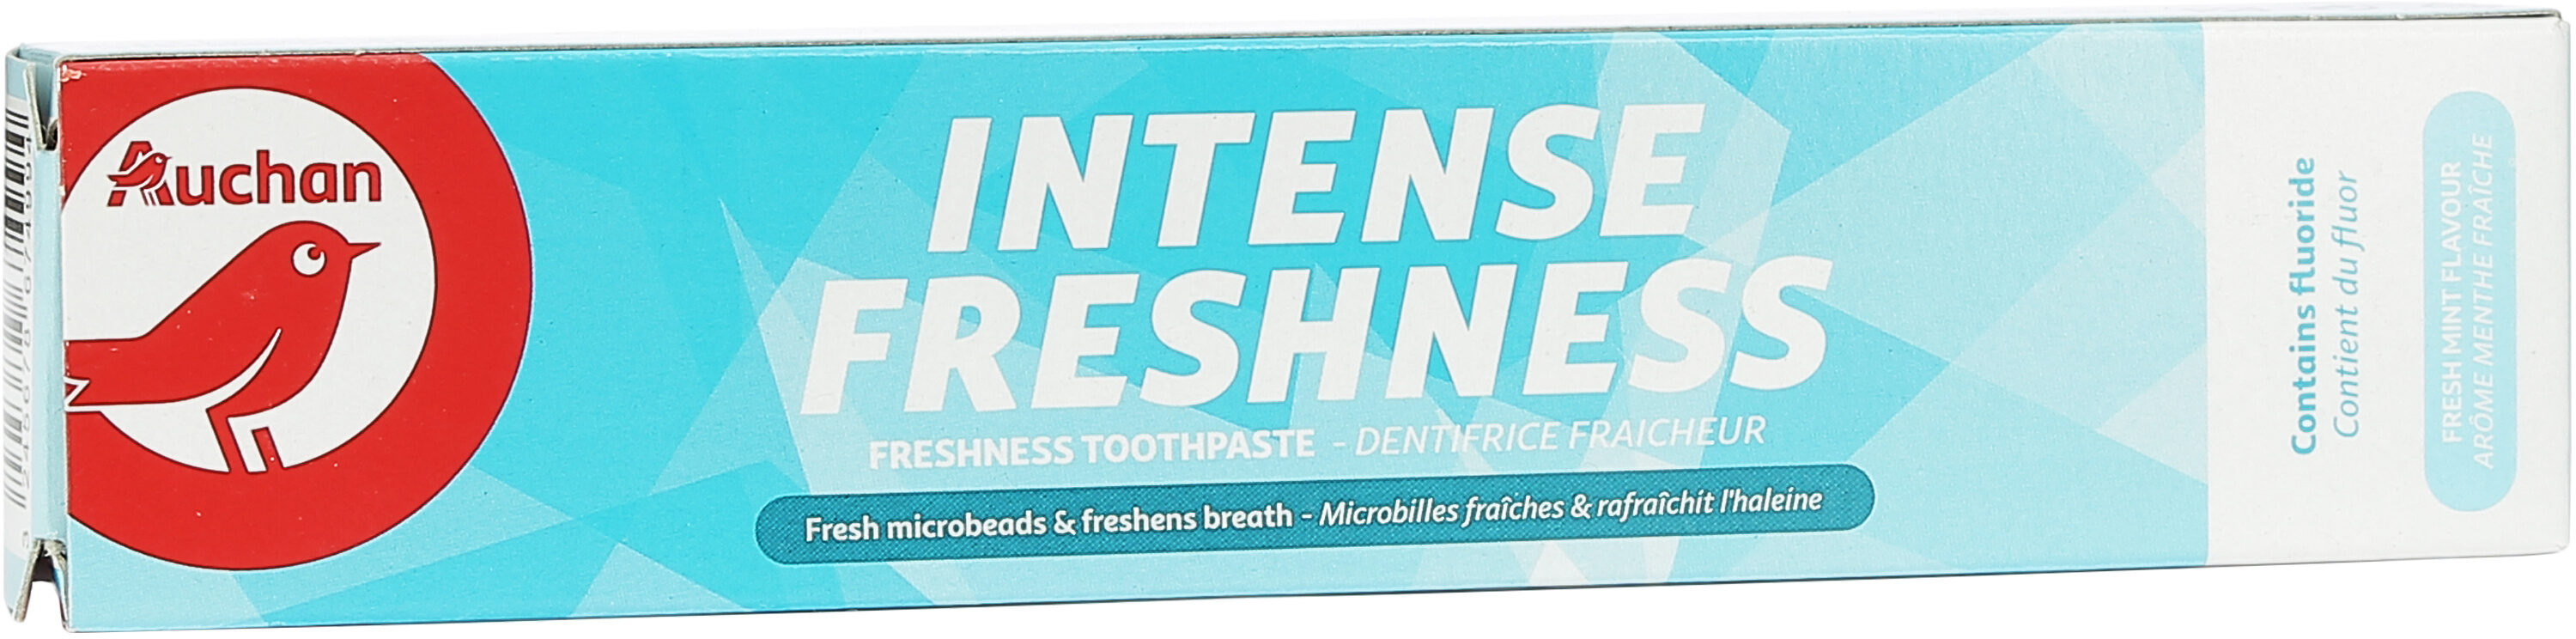 Auchan - dentifrice - fraicheur intense - 75ml - Tuote - fr